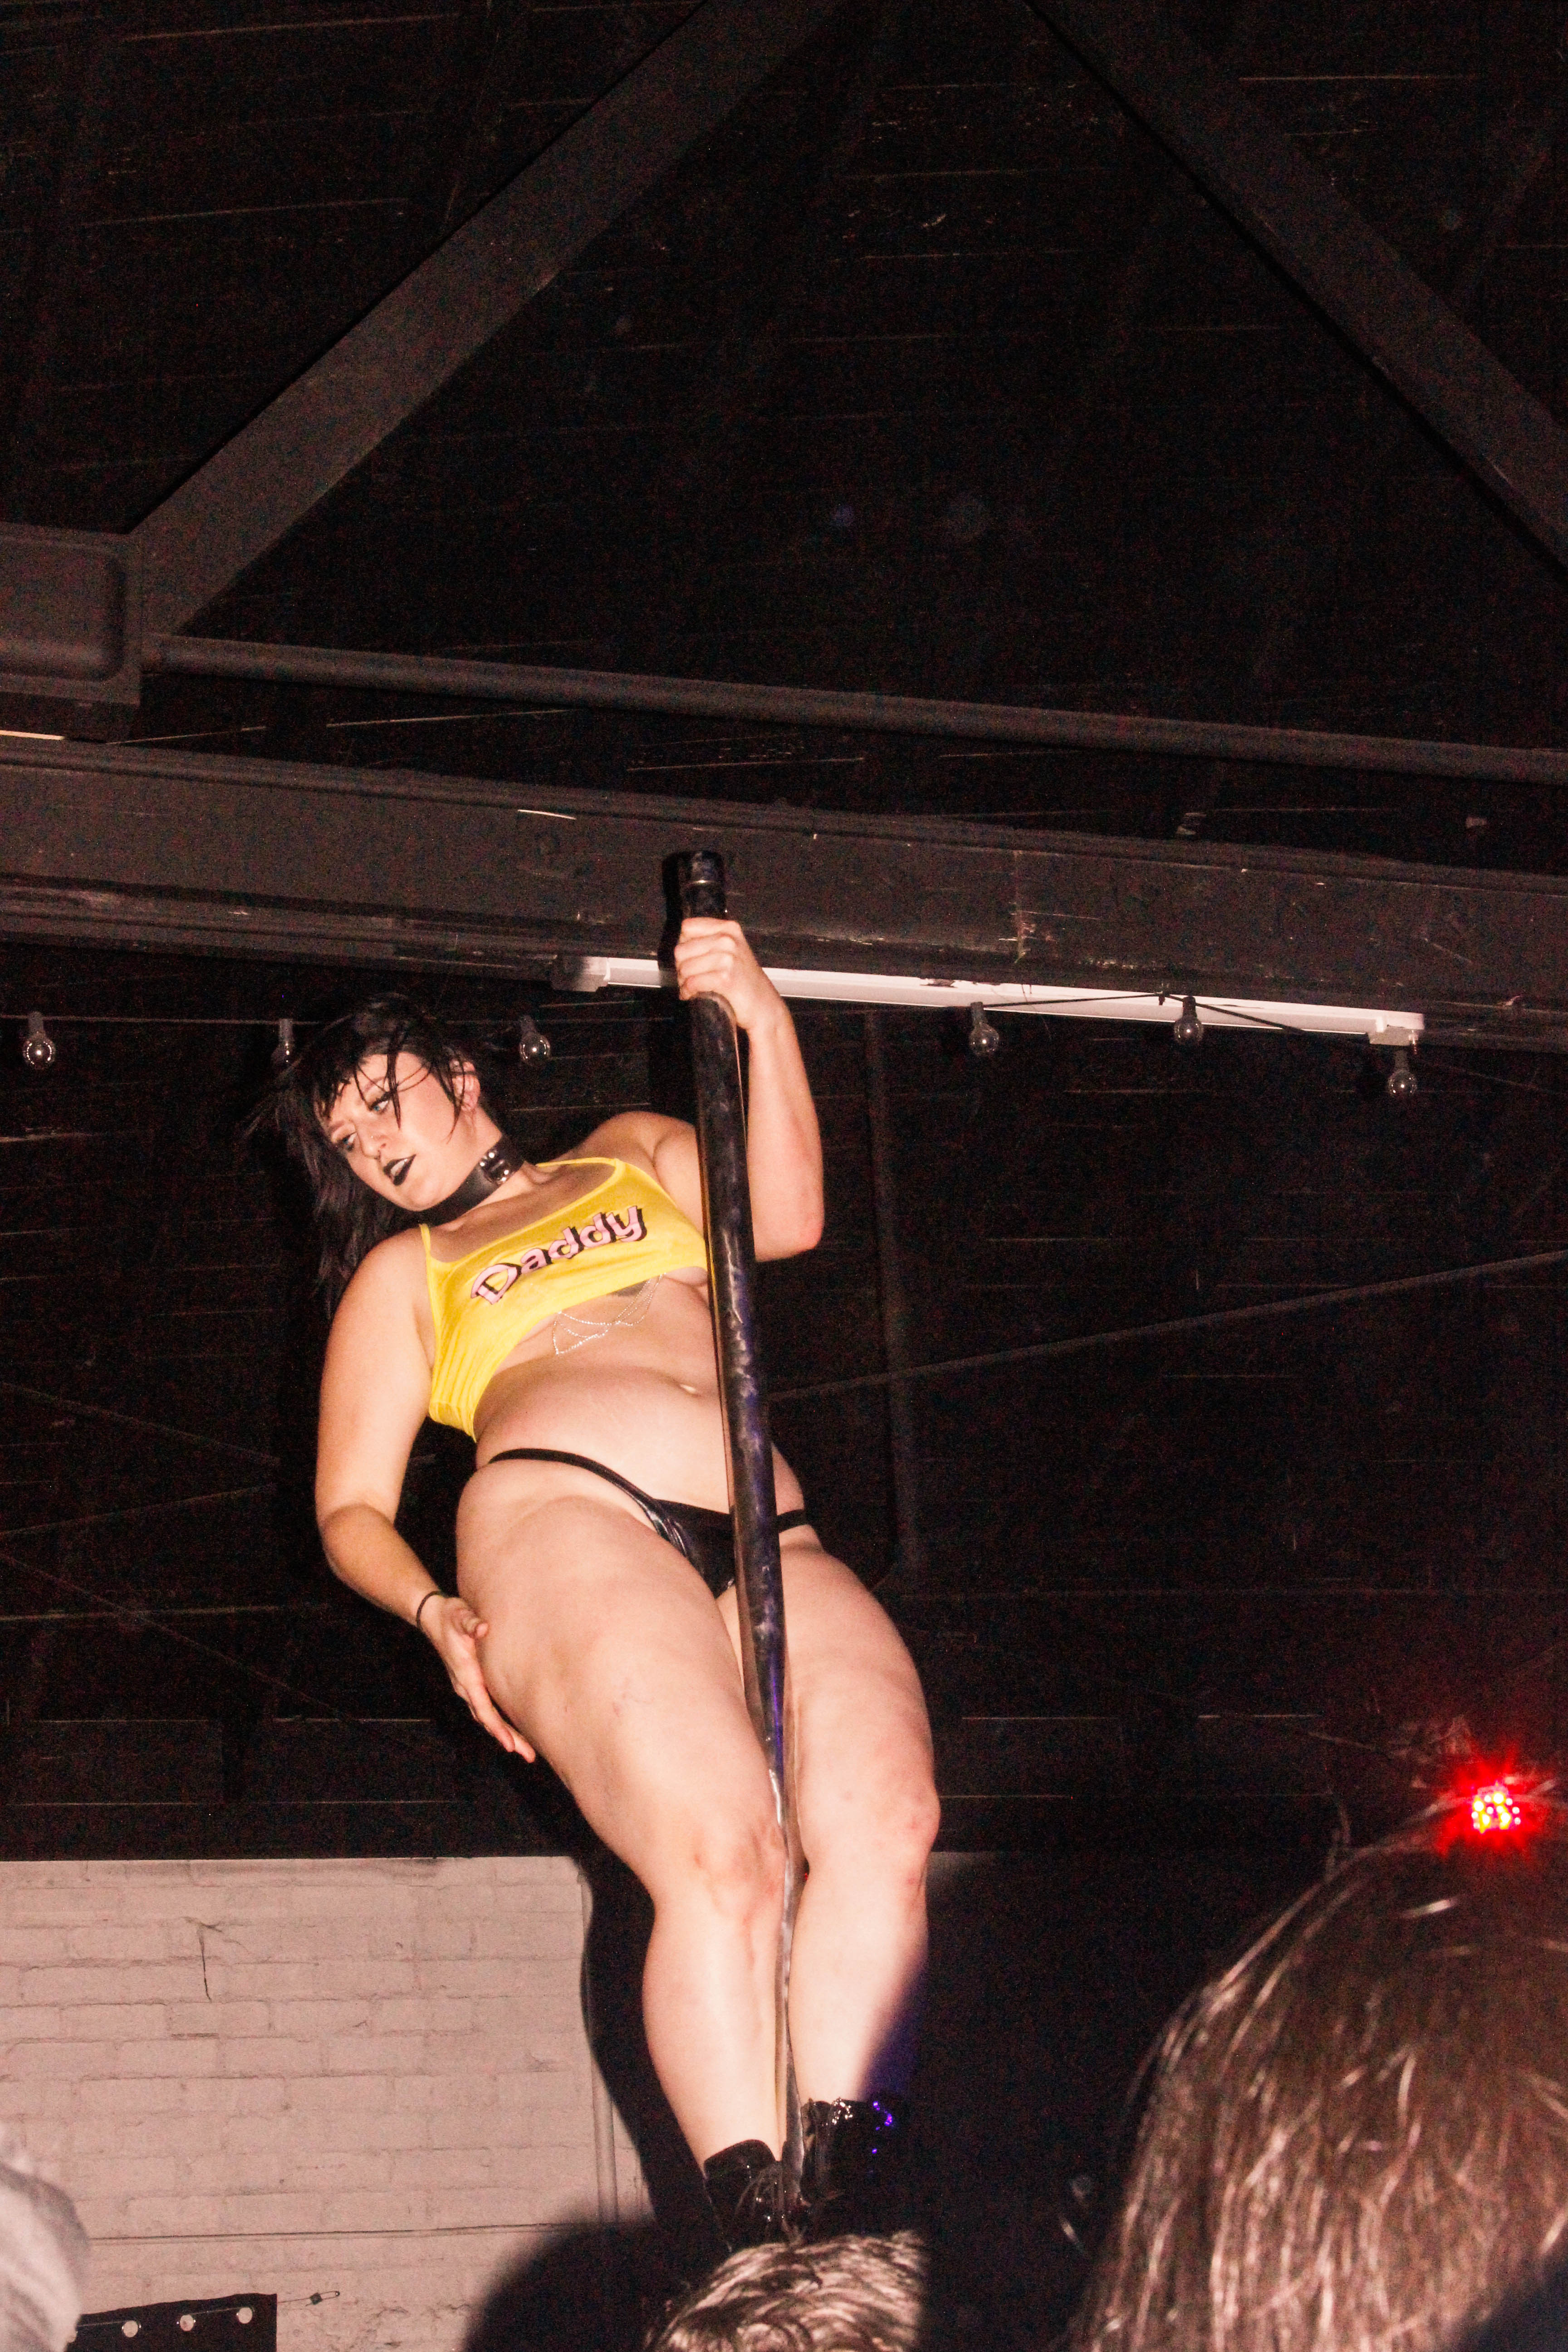 A stripper on a pole